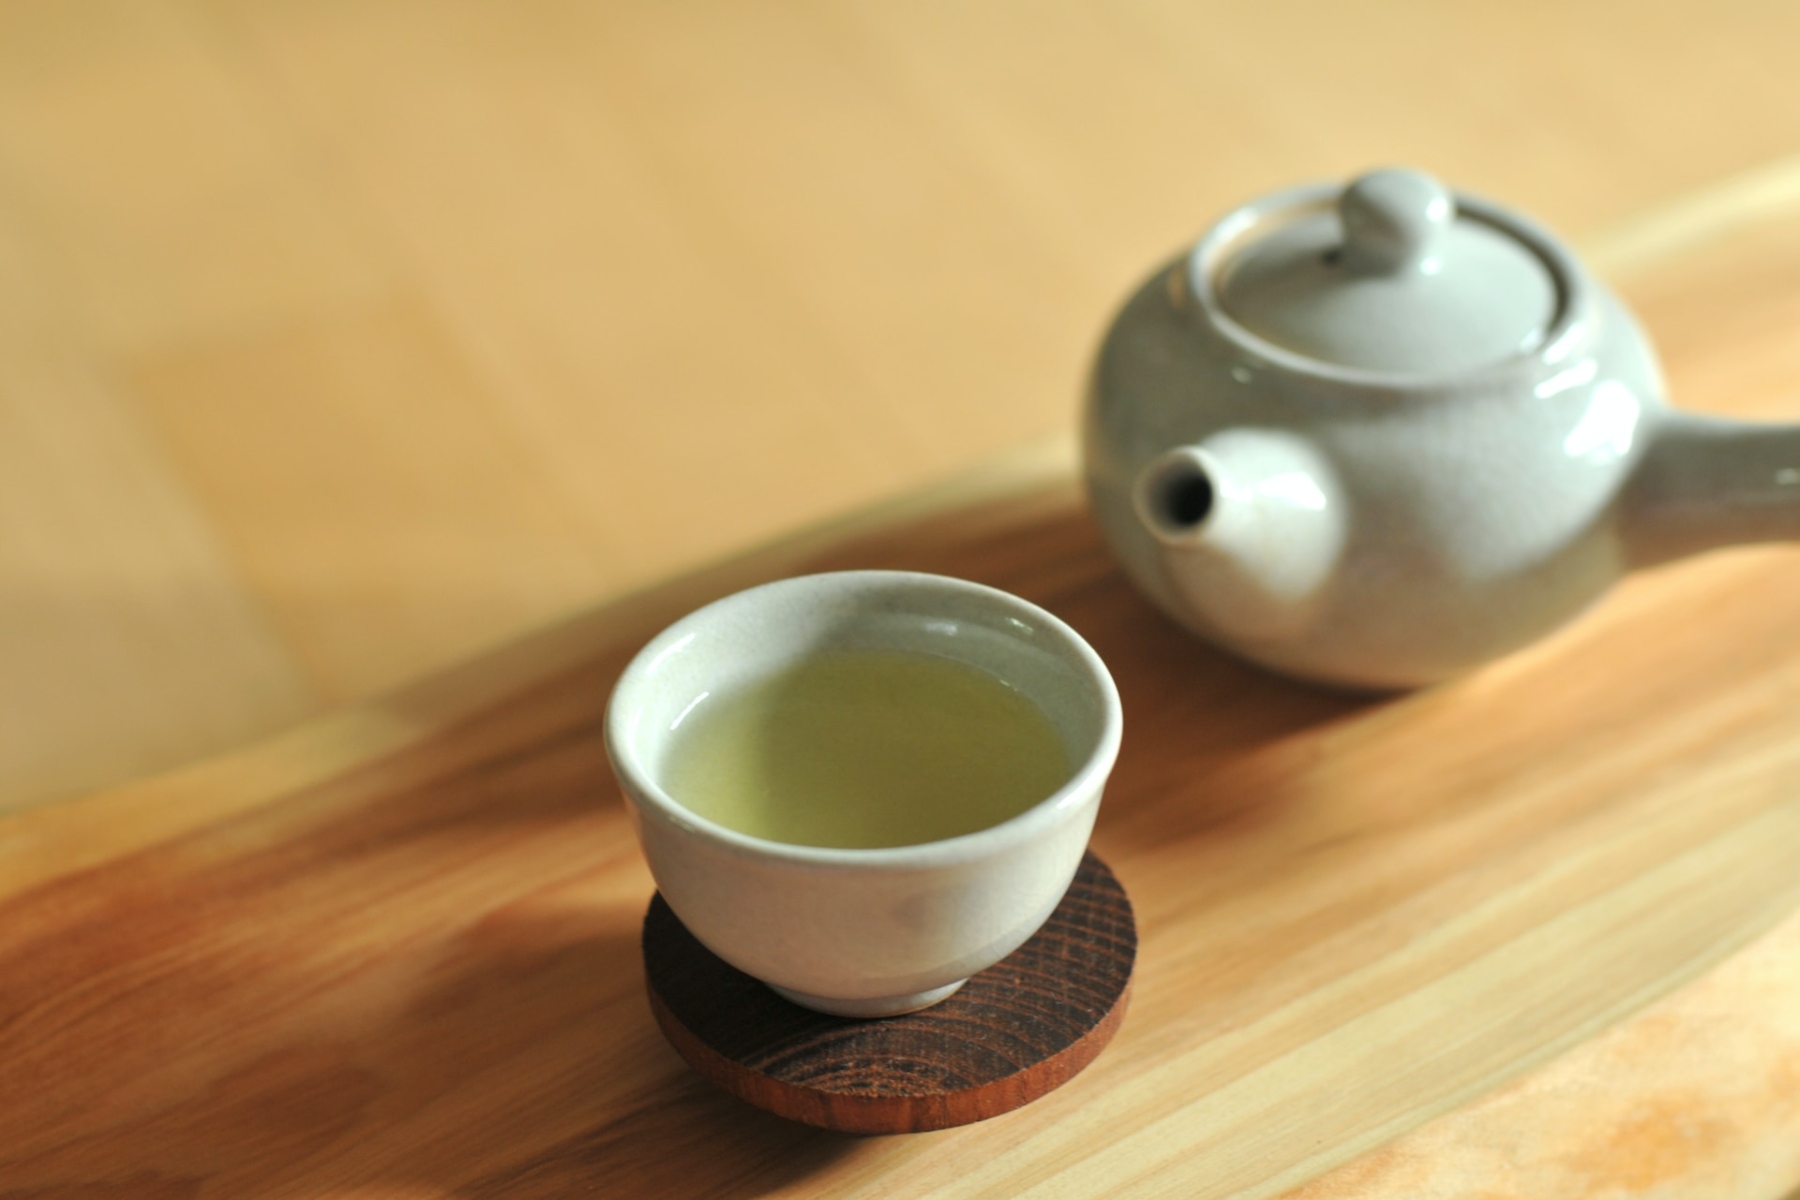 Πράσινο τσάι: Οφέλη για την υγεία από την κατανάλωση πράσινου τσαγιού με λεμόνι καθημερινά